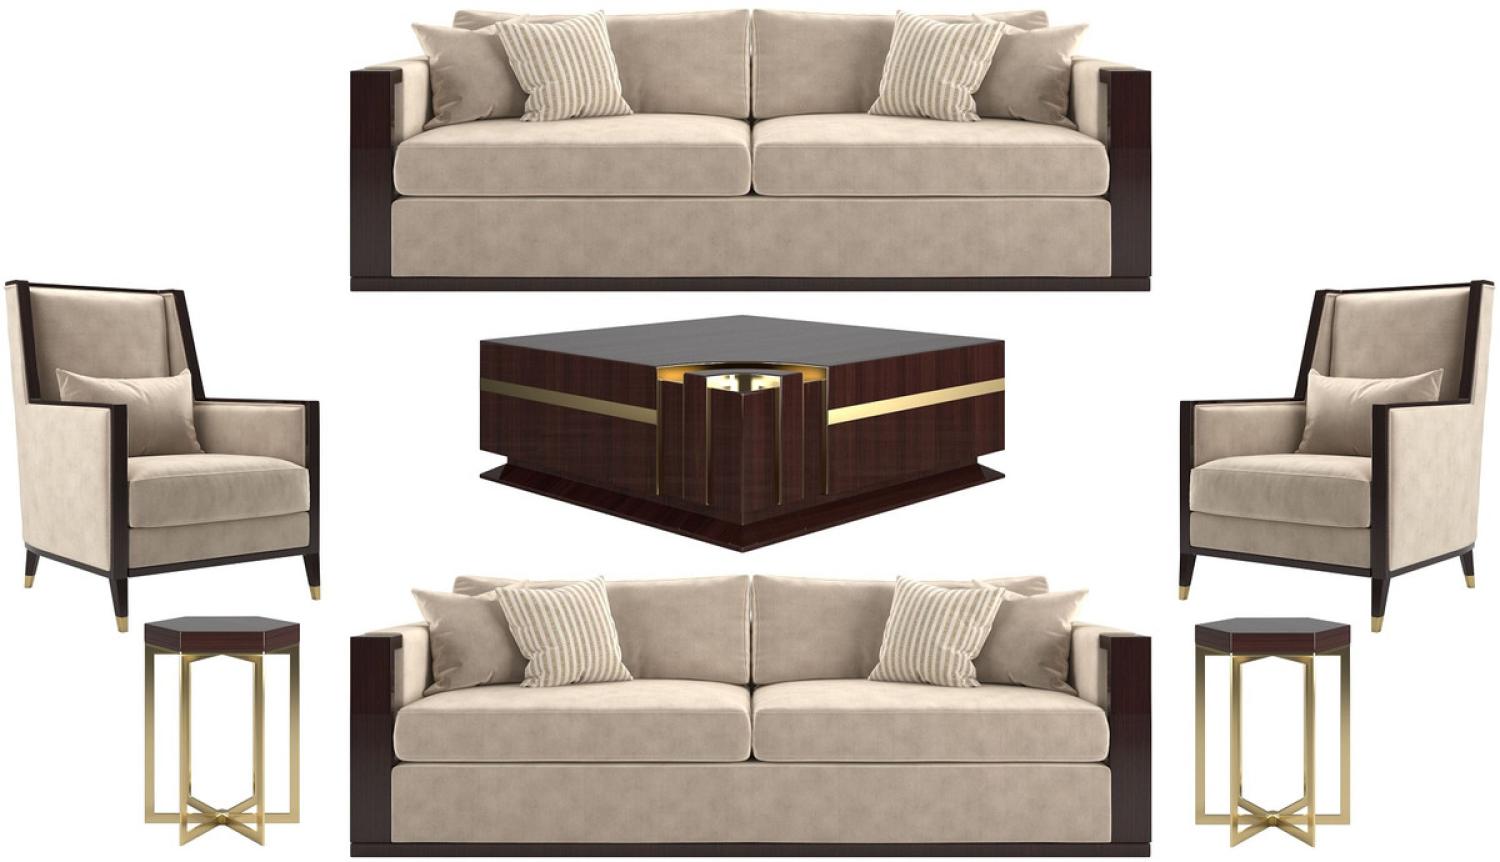 Casa Padrino Luxus Art Deco Wohnzimmer Set Beige / Dunkelbraun Hochglanz / Gold - 2 Sofas & 2 Sessel & 1 Couchtisch & 2 Beistelltische - Edle Wohnzimmer Möbel - Luxus Qualität Bild 1